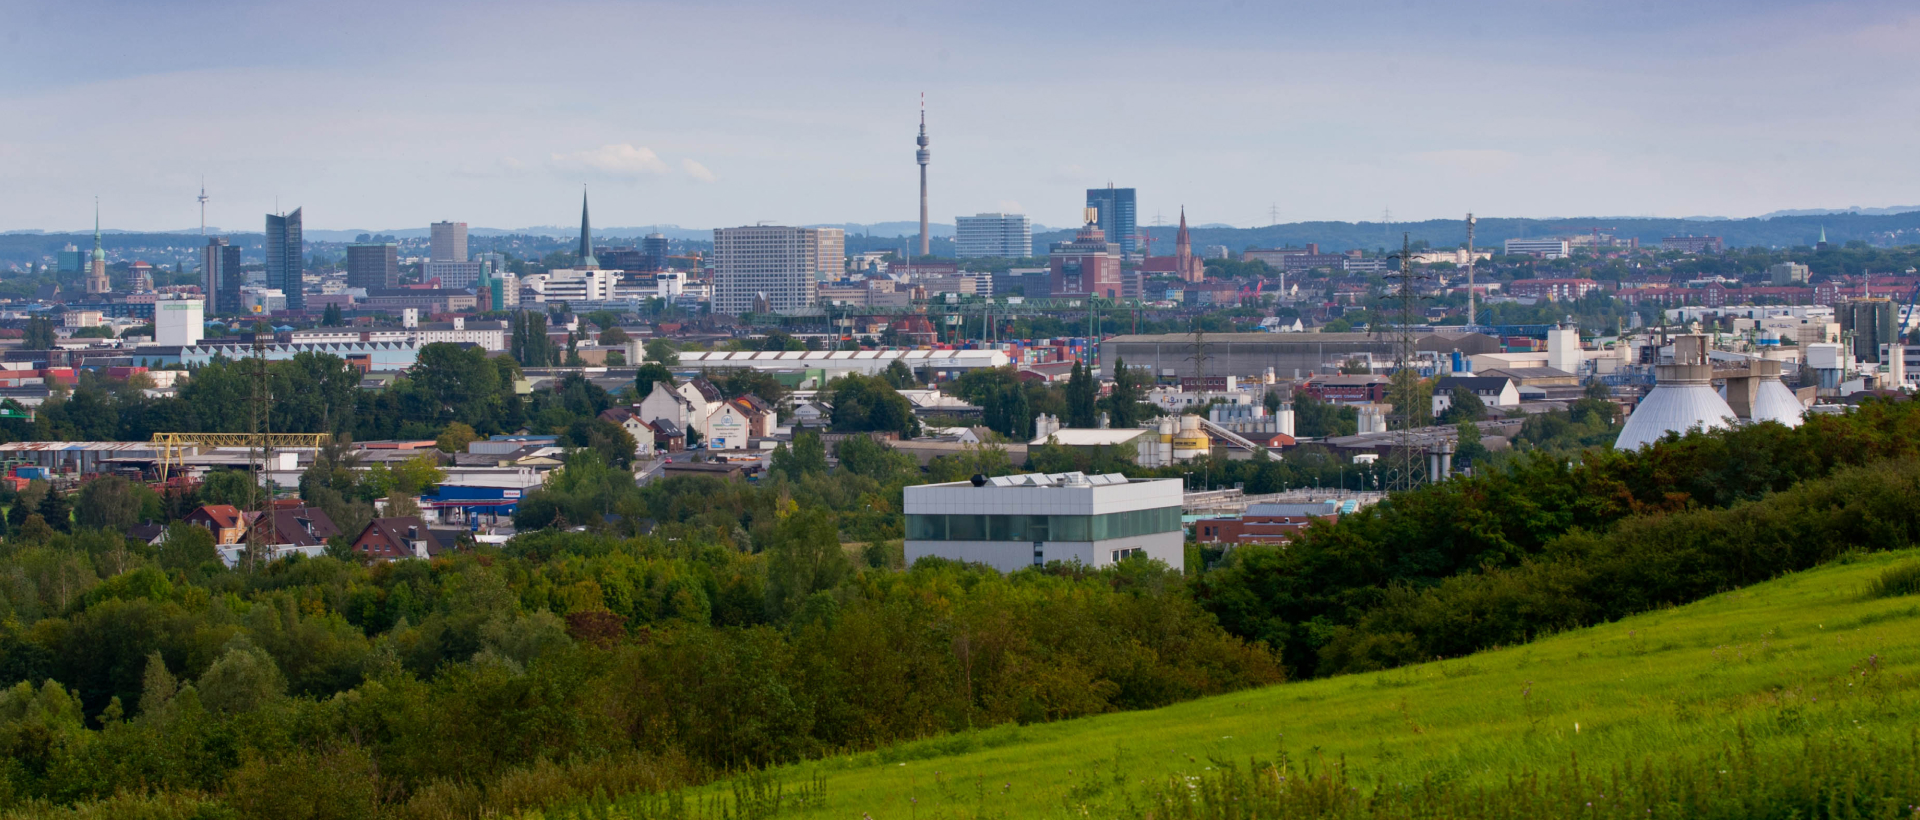 Blick auf die Skyline von Dortmund von einem Hügel aus